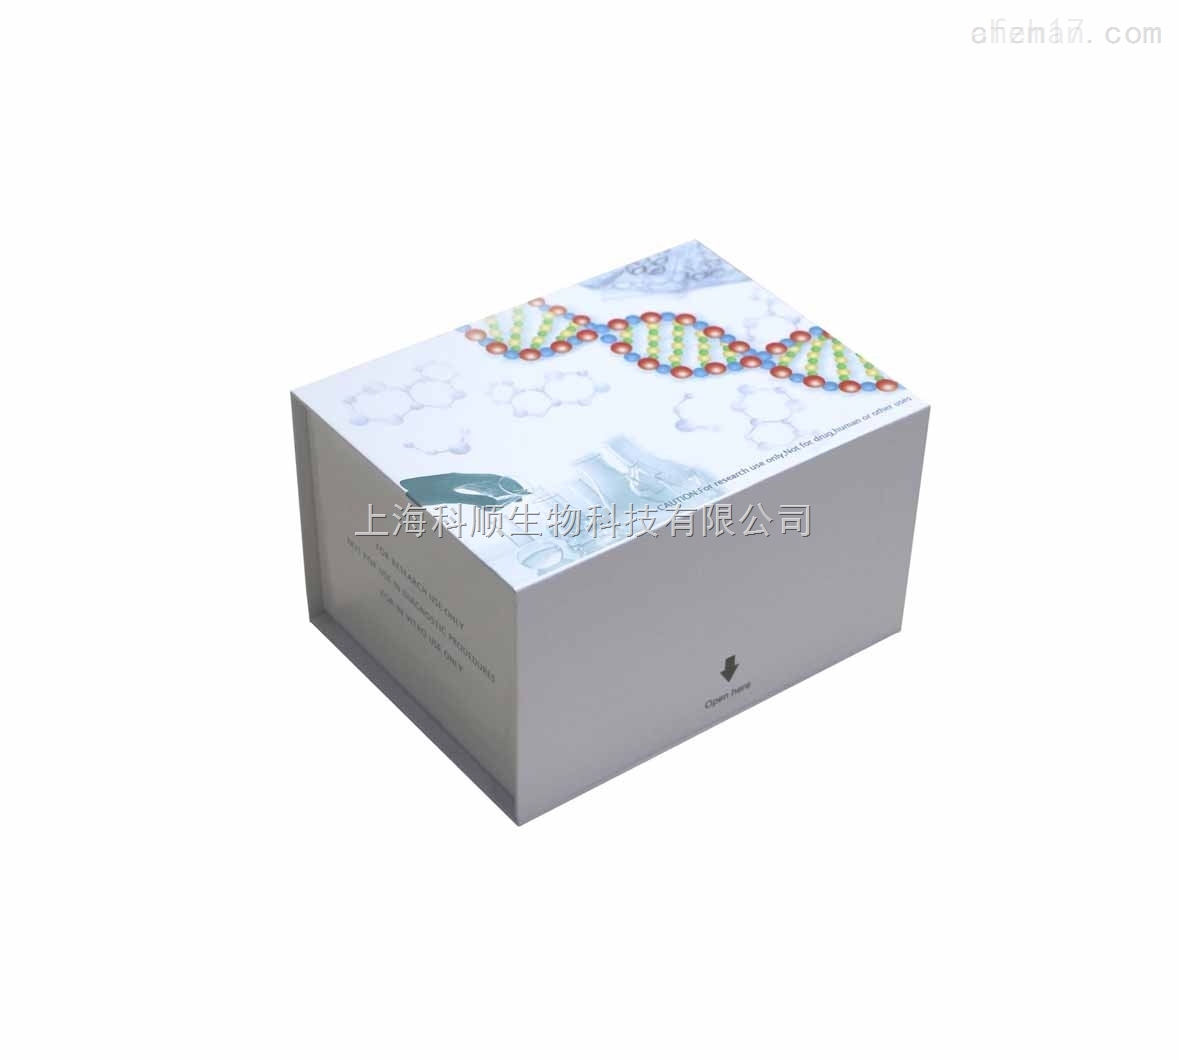 小鼠铁调素检测试剂盒图片